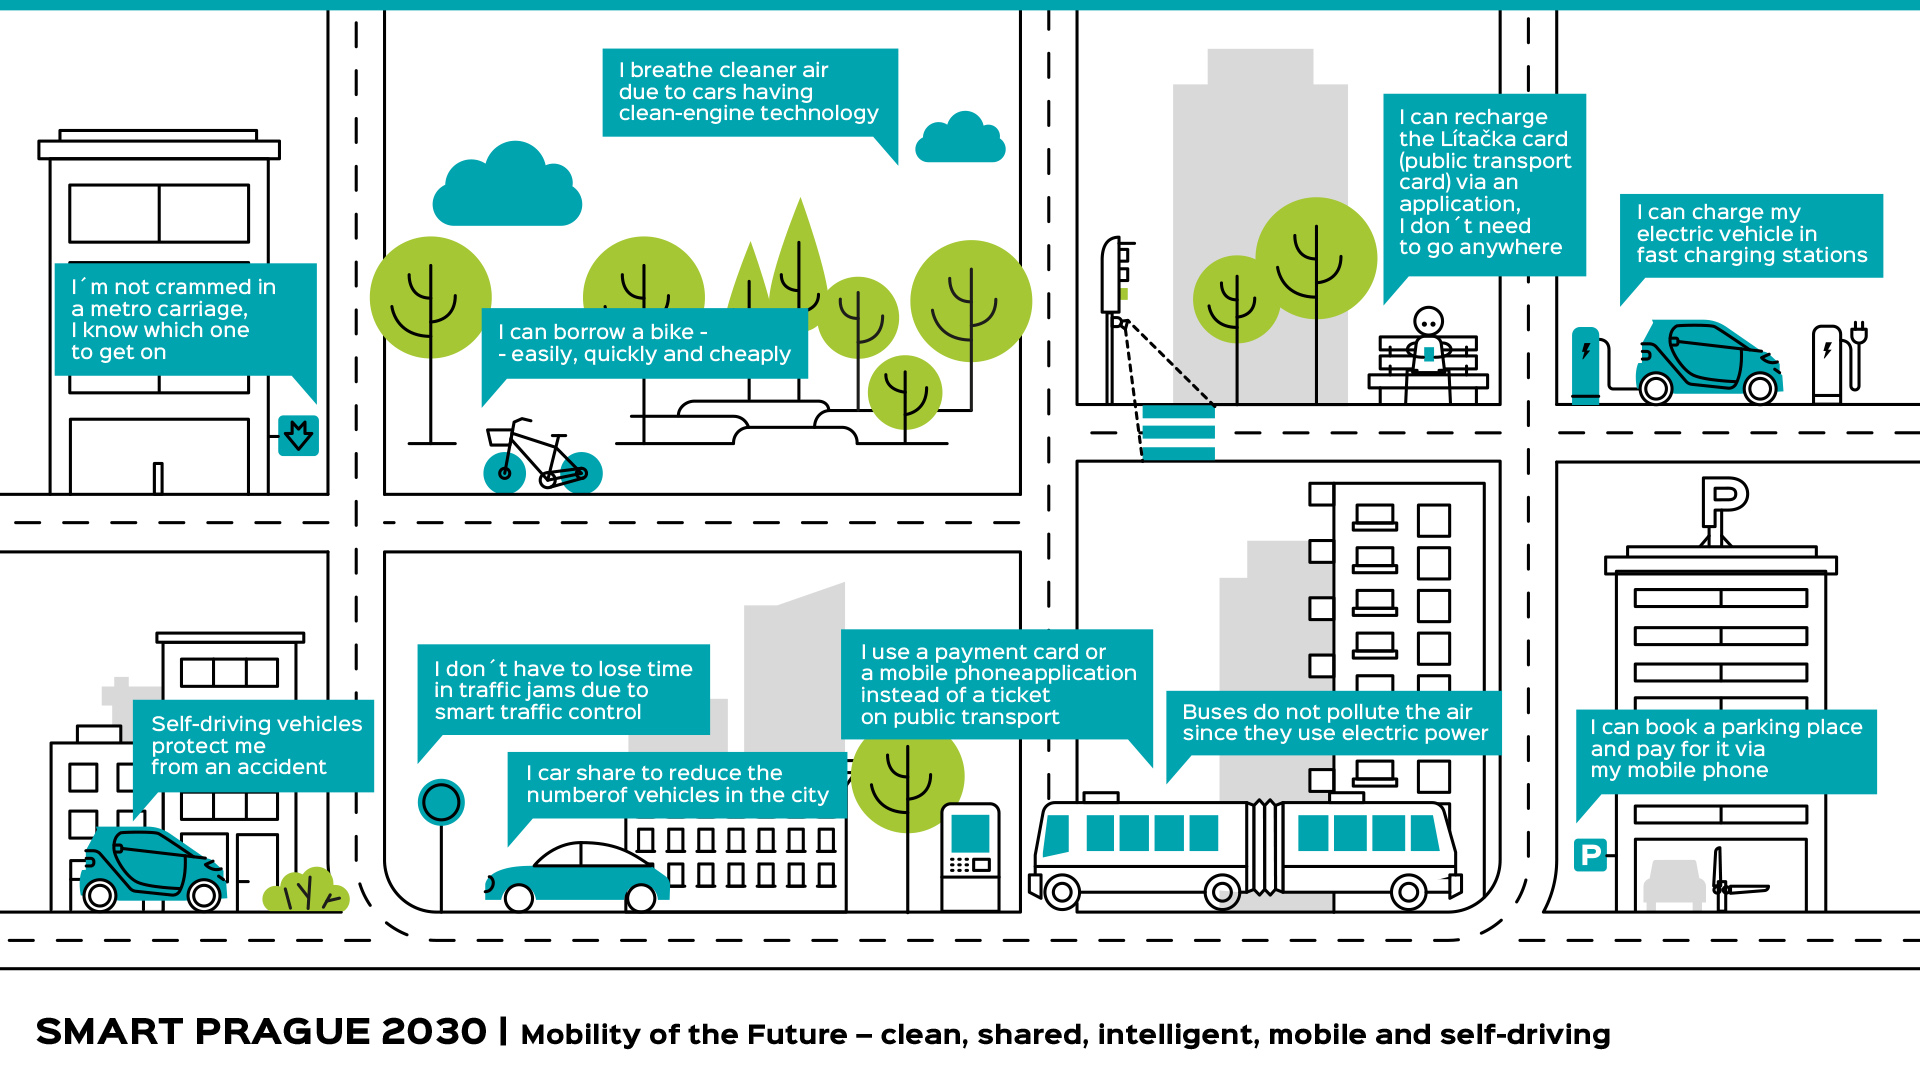 Smart Prague, Smart Cities mobilita budoucnosti